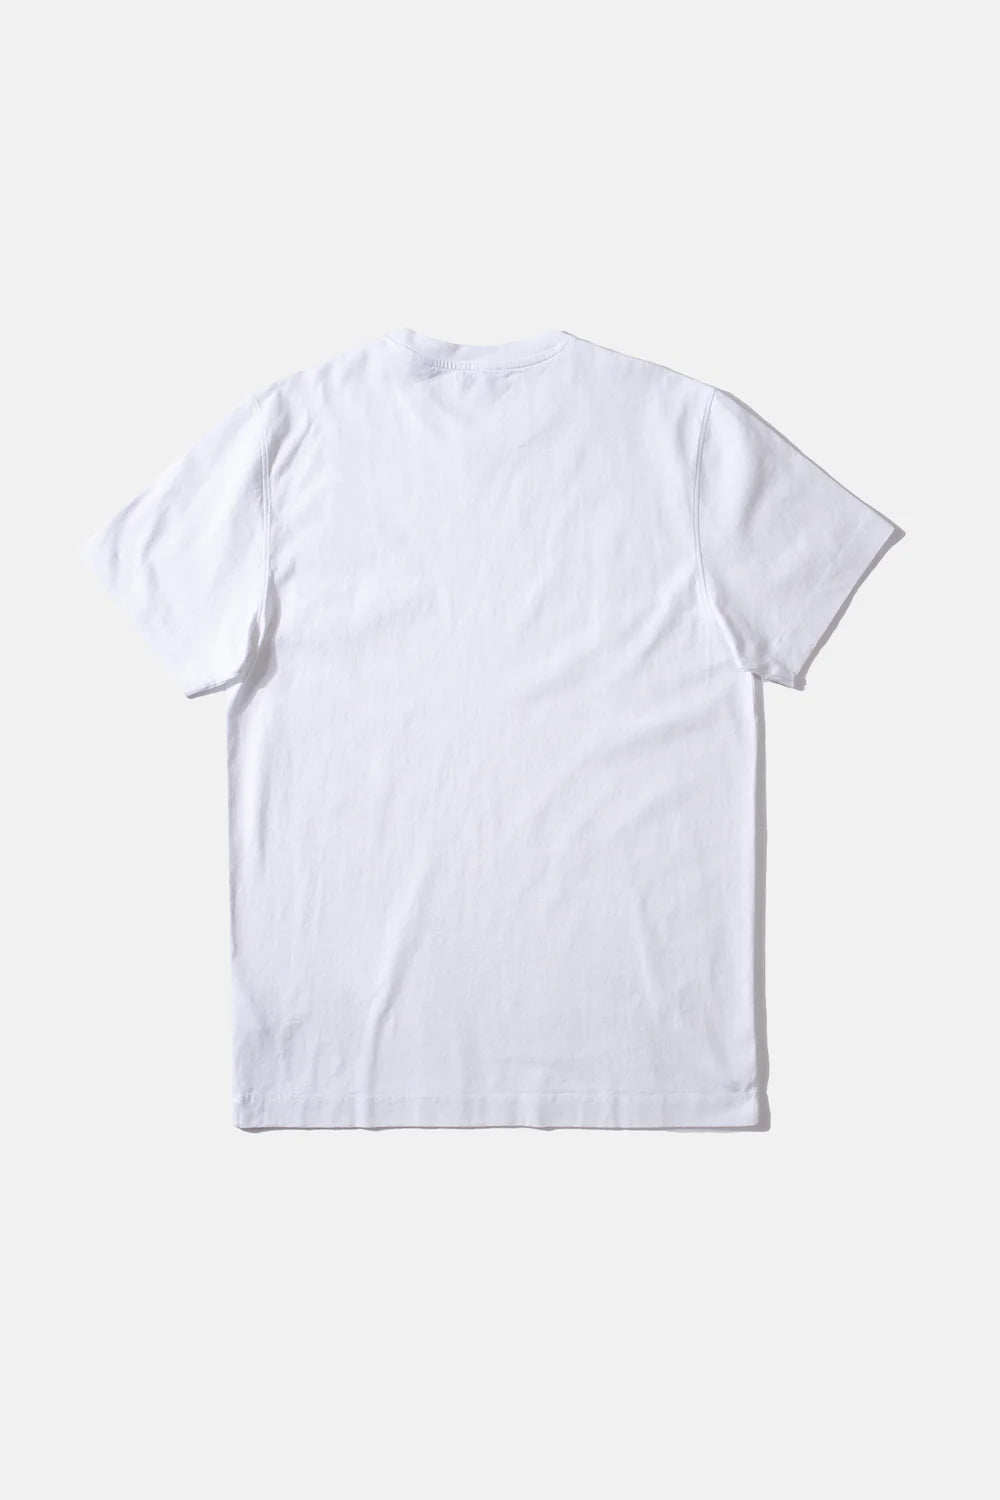 Edmmond Studios Runner Plain White T-Shirt